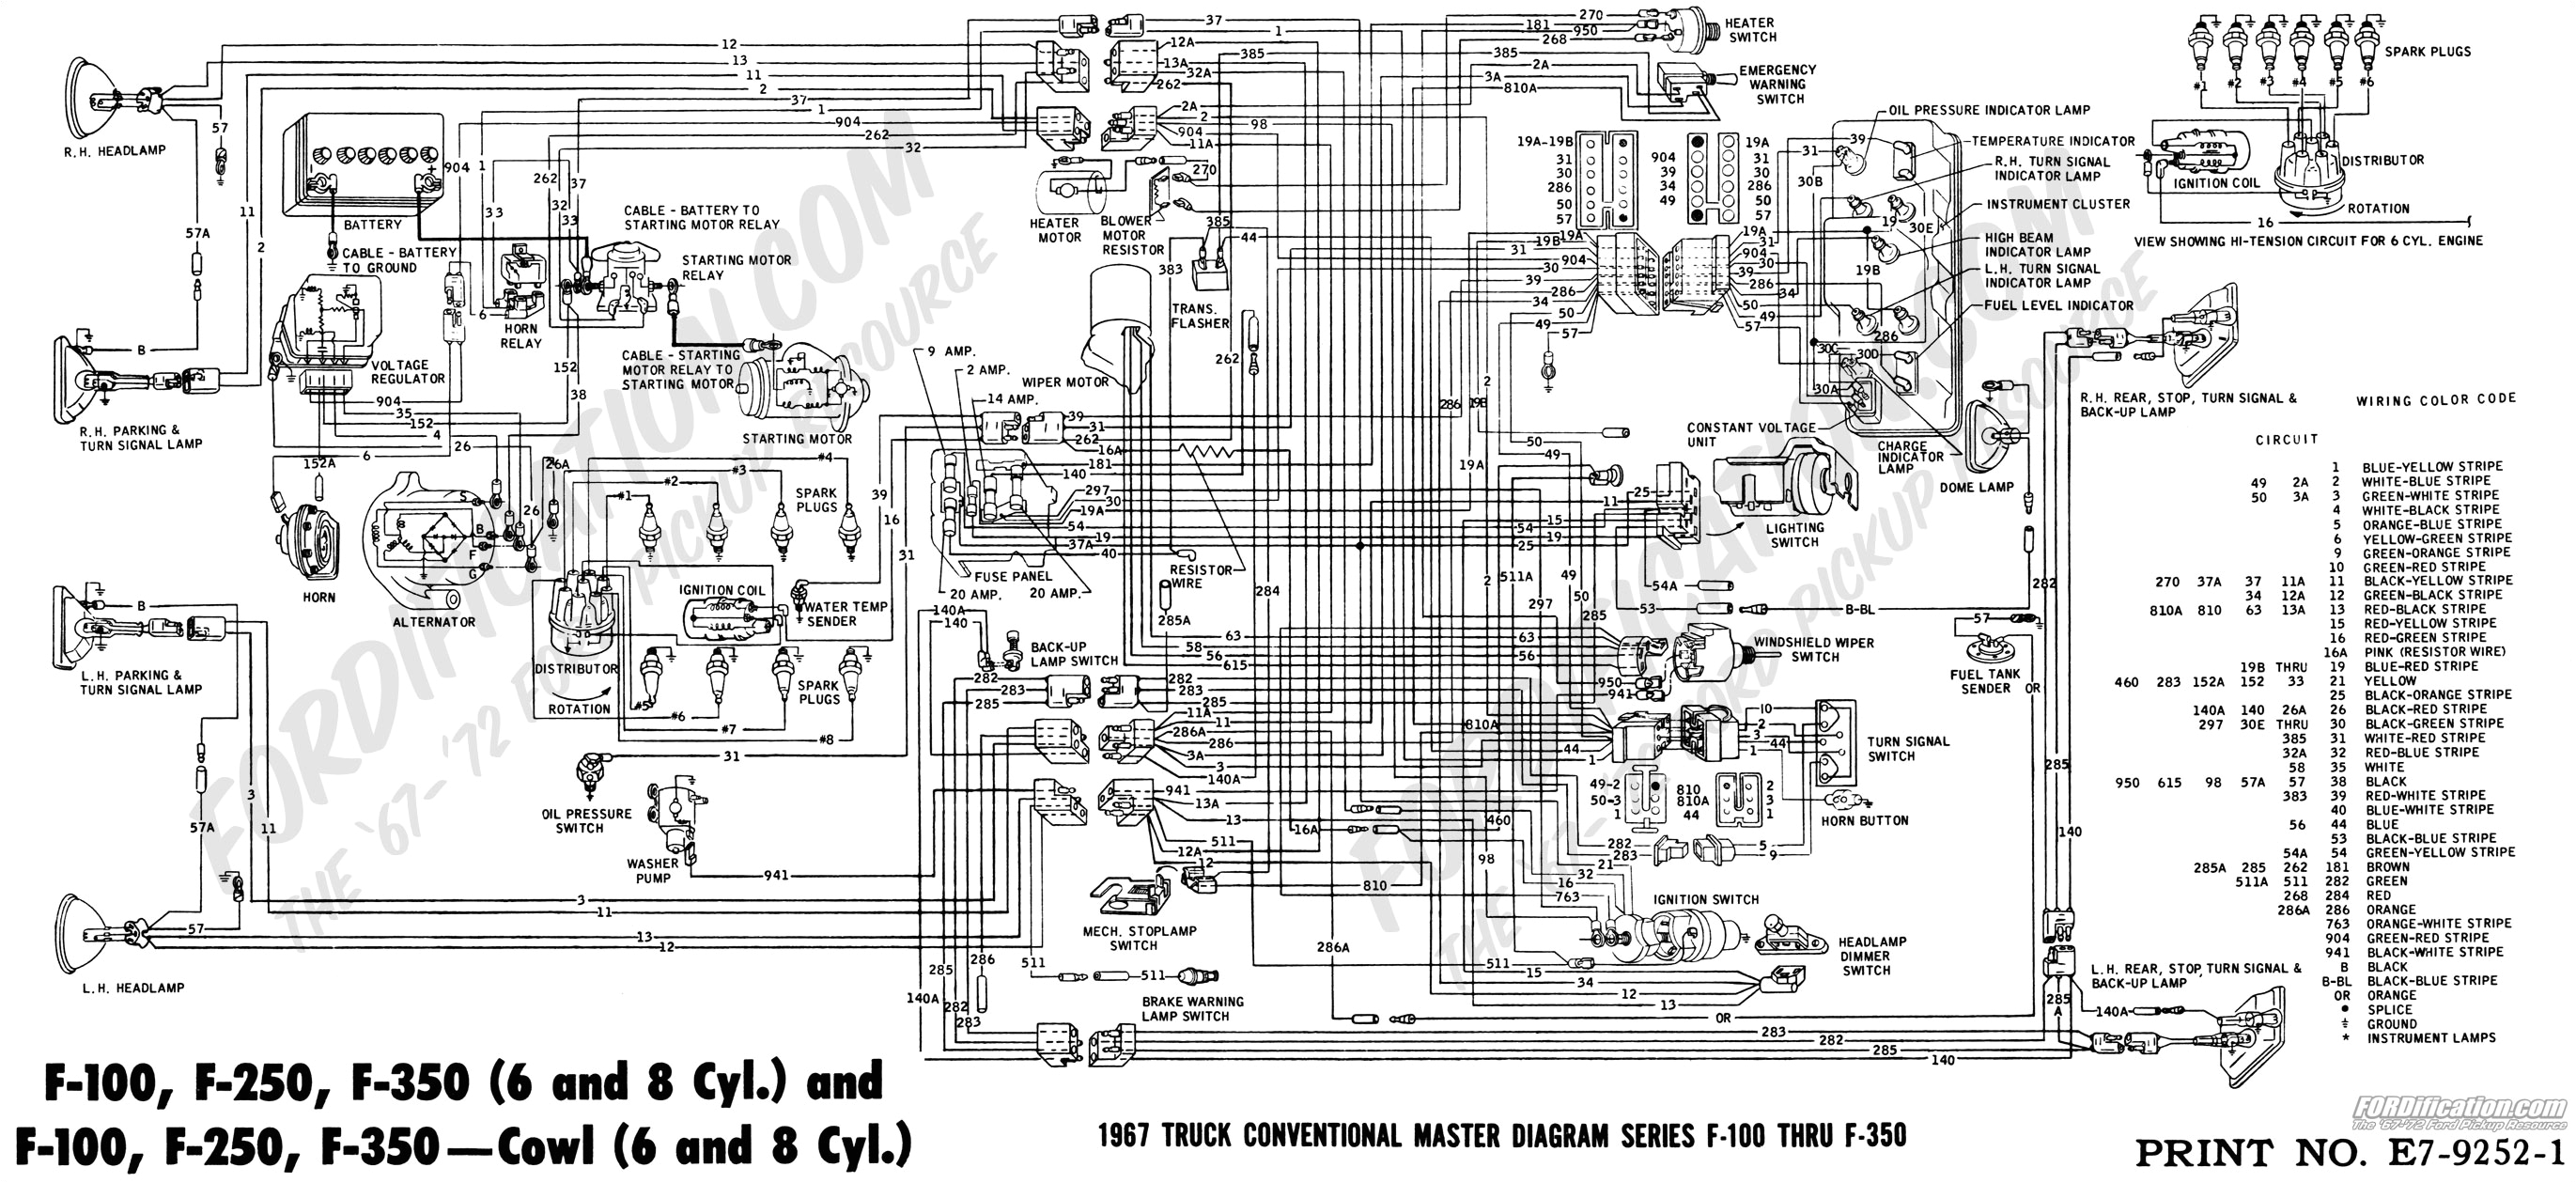 ford 99 f 150 headlights wiring schematic wiring diagram load 99 f150 alternator wiring diagram 99 f150 wiring diagram